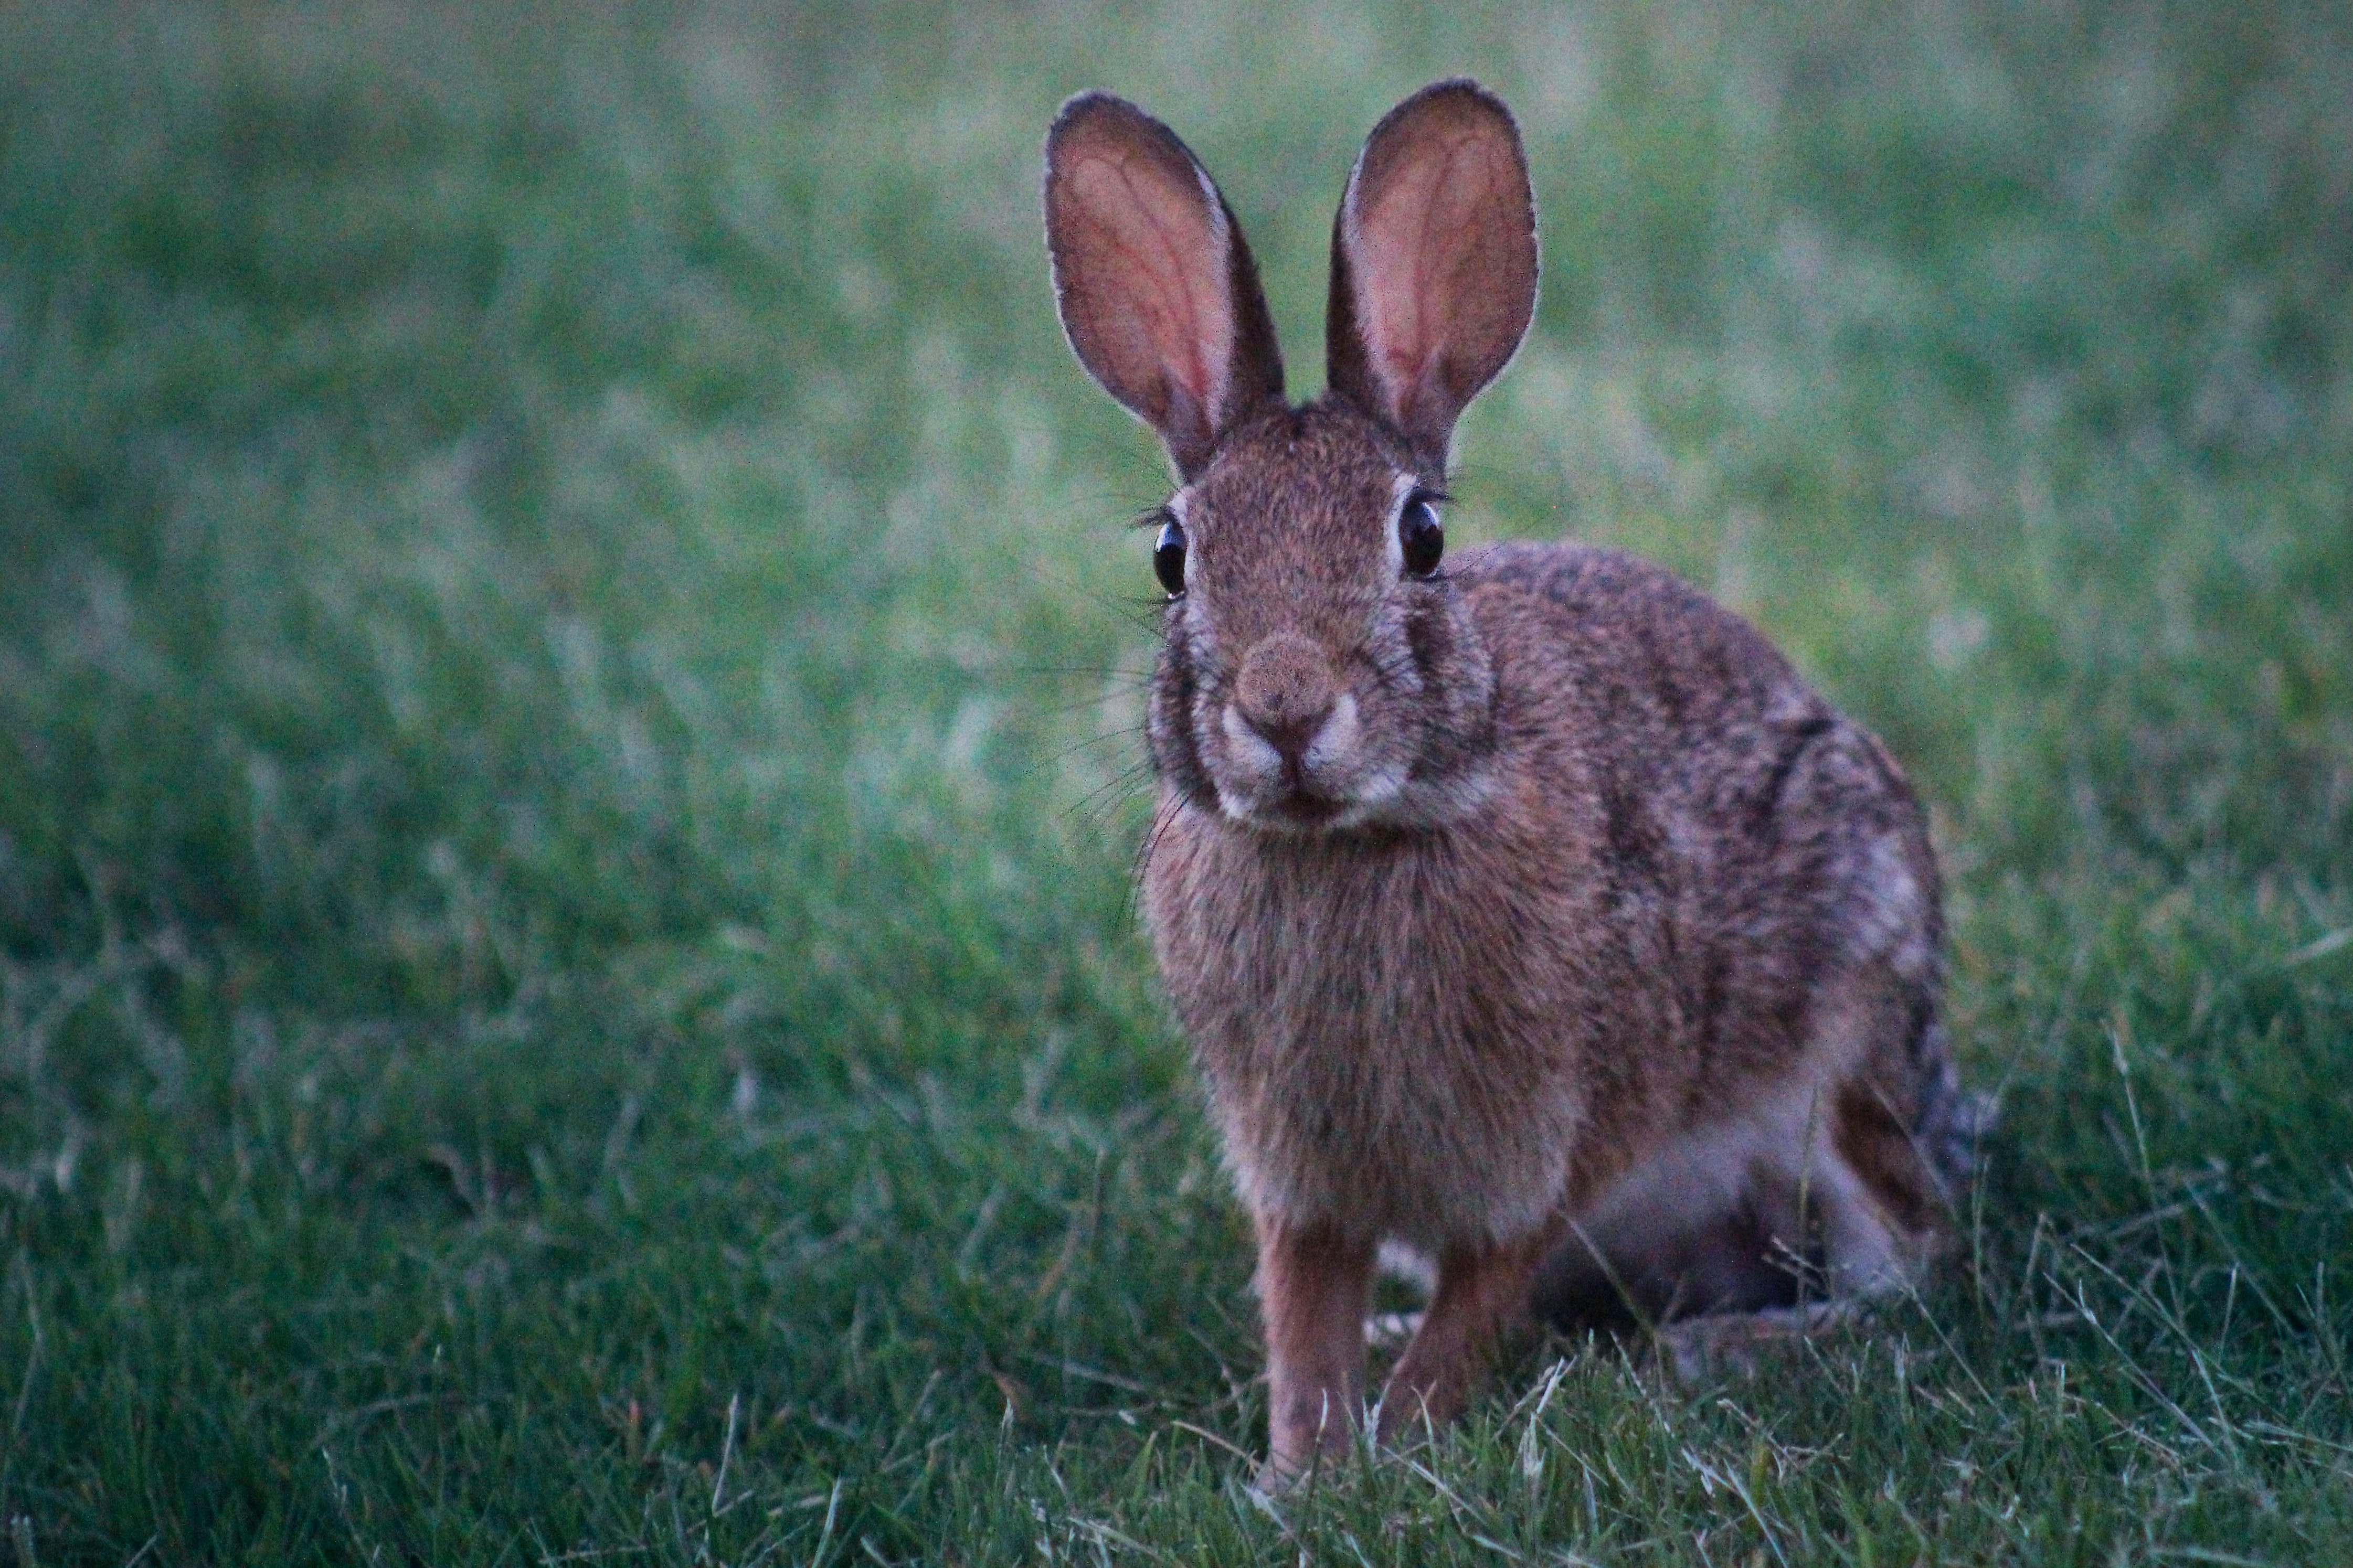 A doença provavelmente se originou há uma década nos coelhos europeus